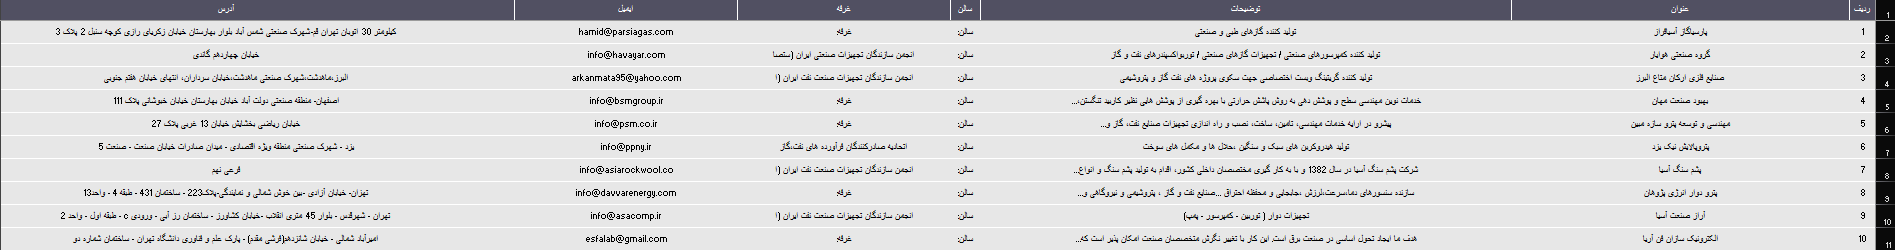 بانک اطلاعات بیست و هفتمین نمایشگاه بین المللی نفت، گاز، پالایش و پتروشیمی ایران سال 1402